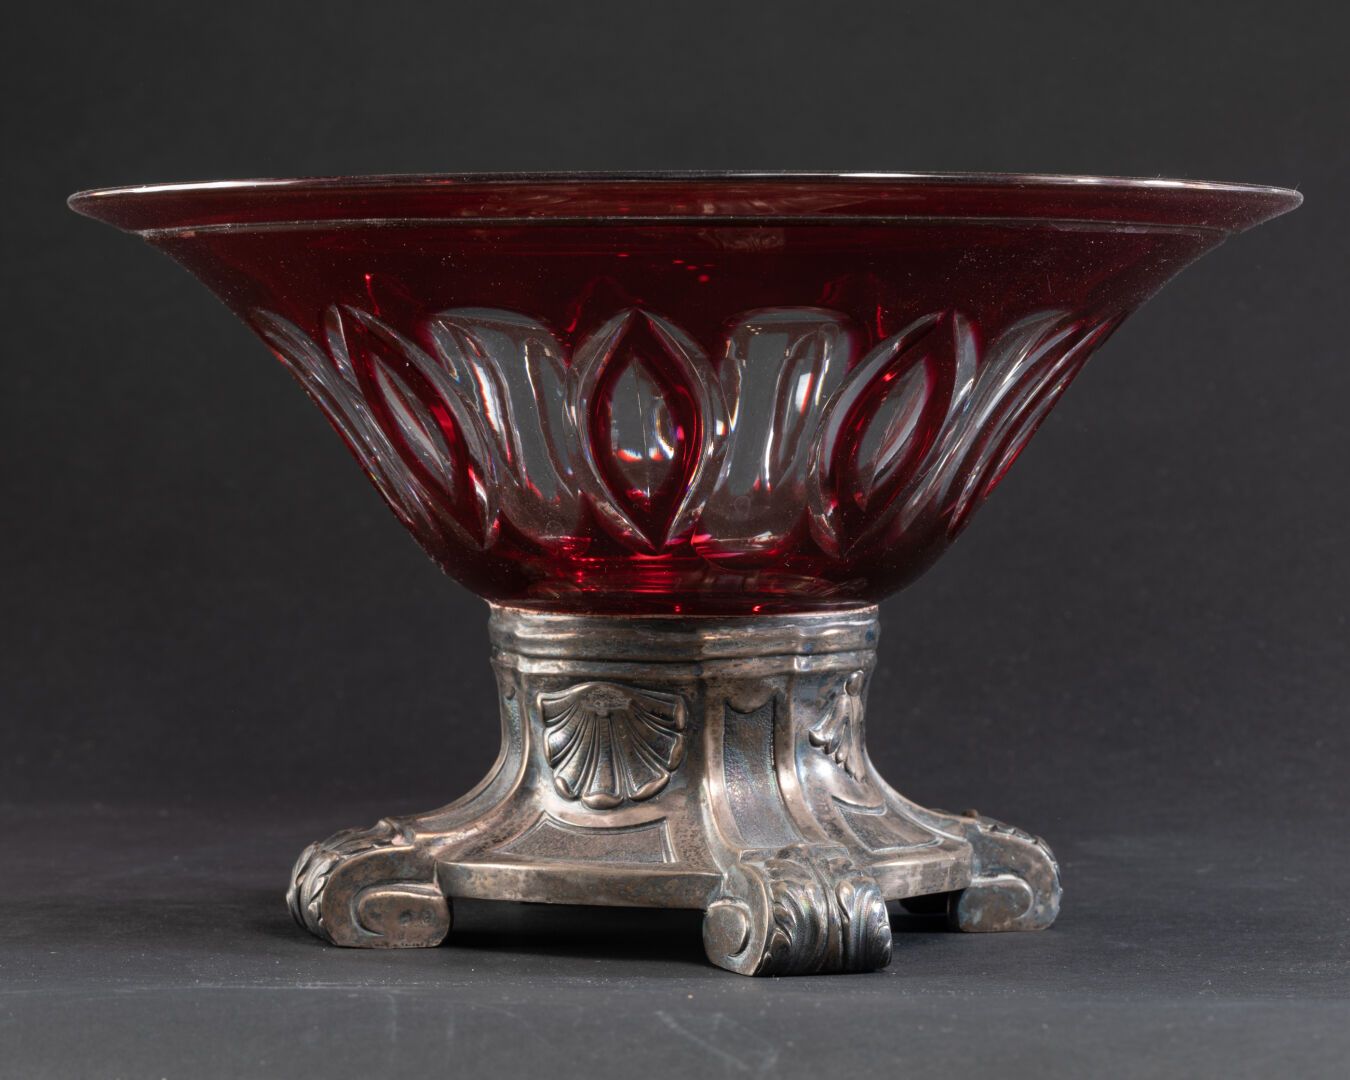 Null 水果杯

披针形叶片的装饰

无色背景上的红宝石套色玻璃

镀银金属基座，带刺桐叶和贝壳

H.14.5厘米。D. 24.5厘米

可能是重新组装的